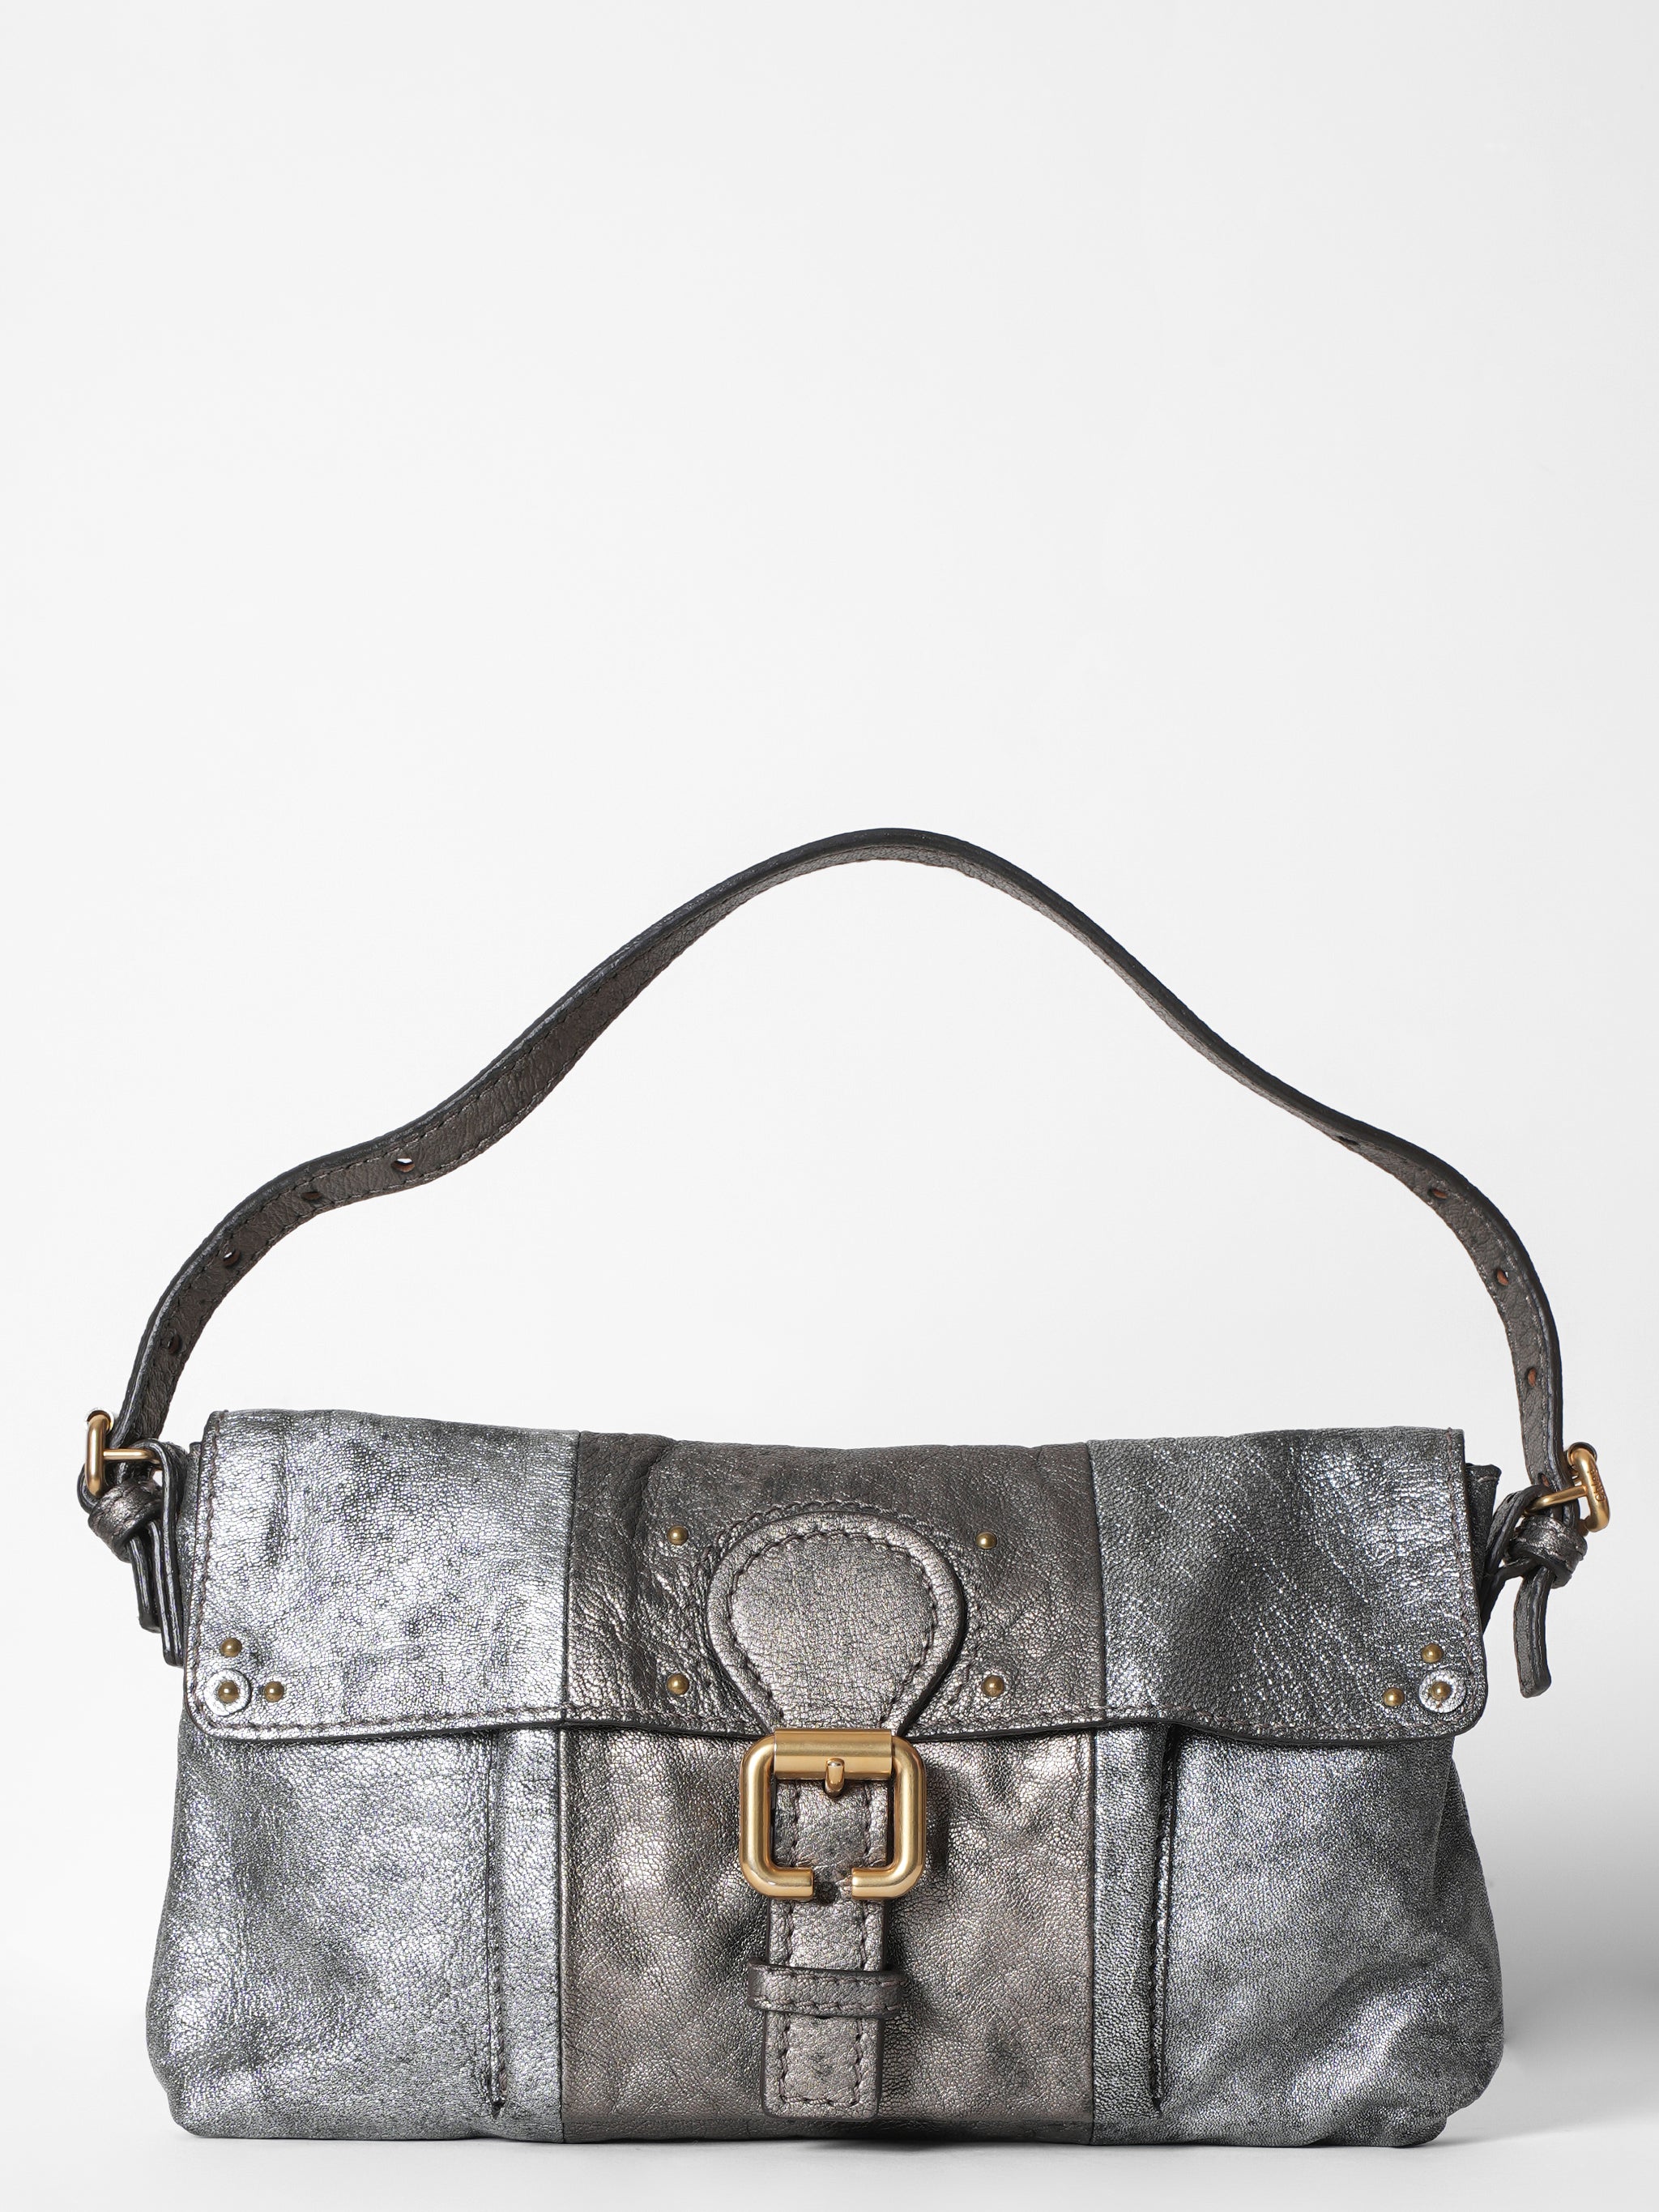 Chloe Metallic Leather Bag